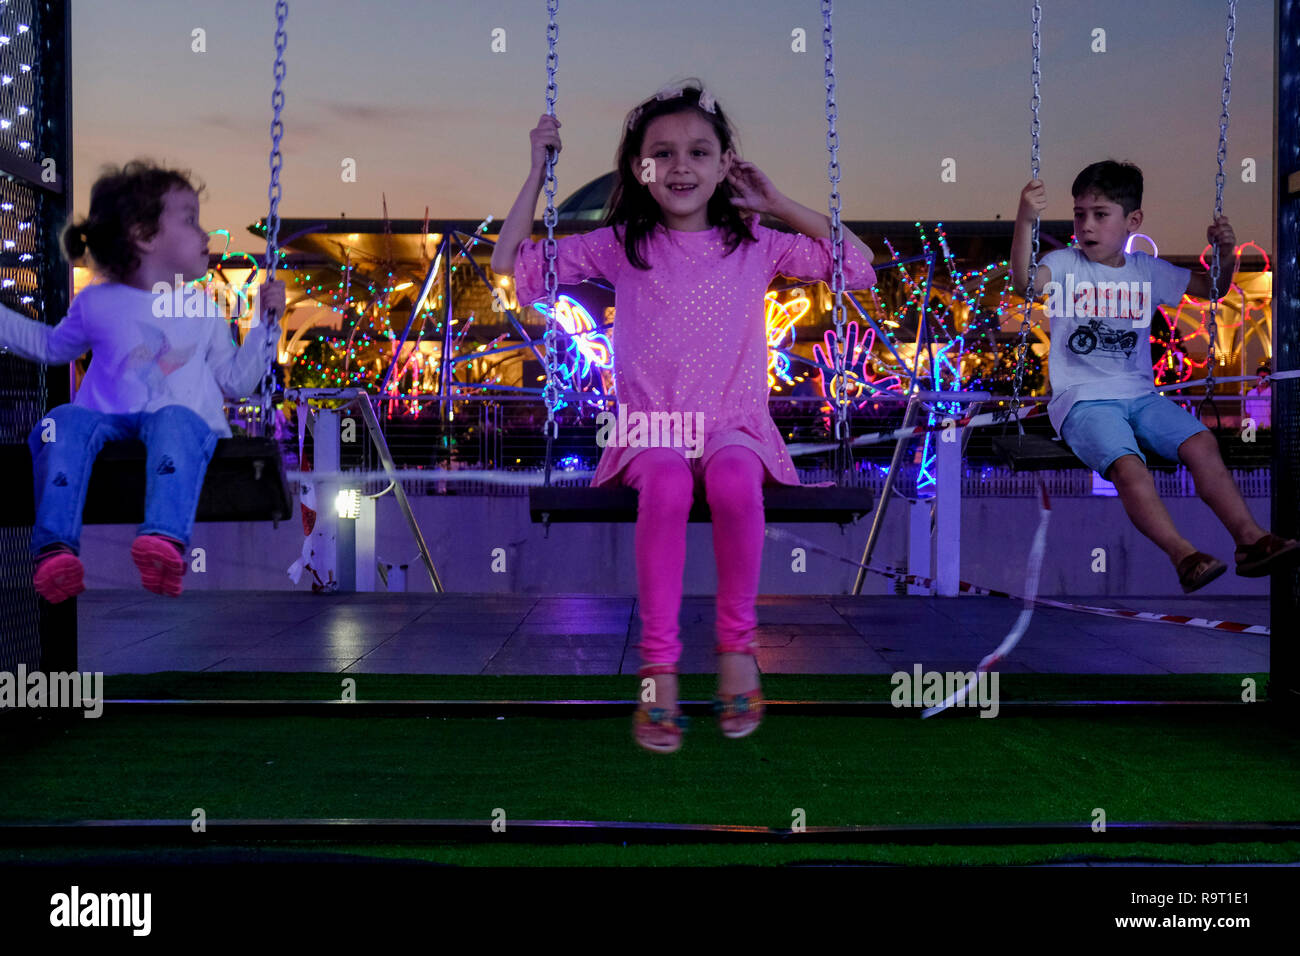 Süße kleine ausländische Kinder, die im Moment auf einer Schaukel an Licht und Bewegung Putrajaya (LAMPU) Festival 2018. Licht und Bewegung Putrajaya auch bekannt als LAMPU Festival am 28. bis 31. Dezember jeden Jahres statt. Das diesjährige Thema ist "Farben der Putrajaya'. Stockfoto